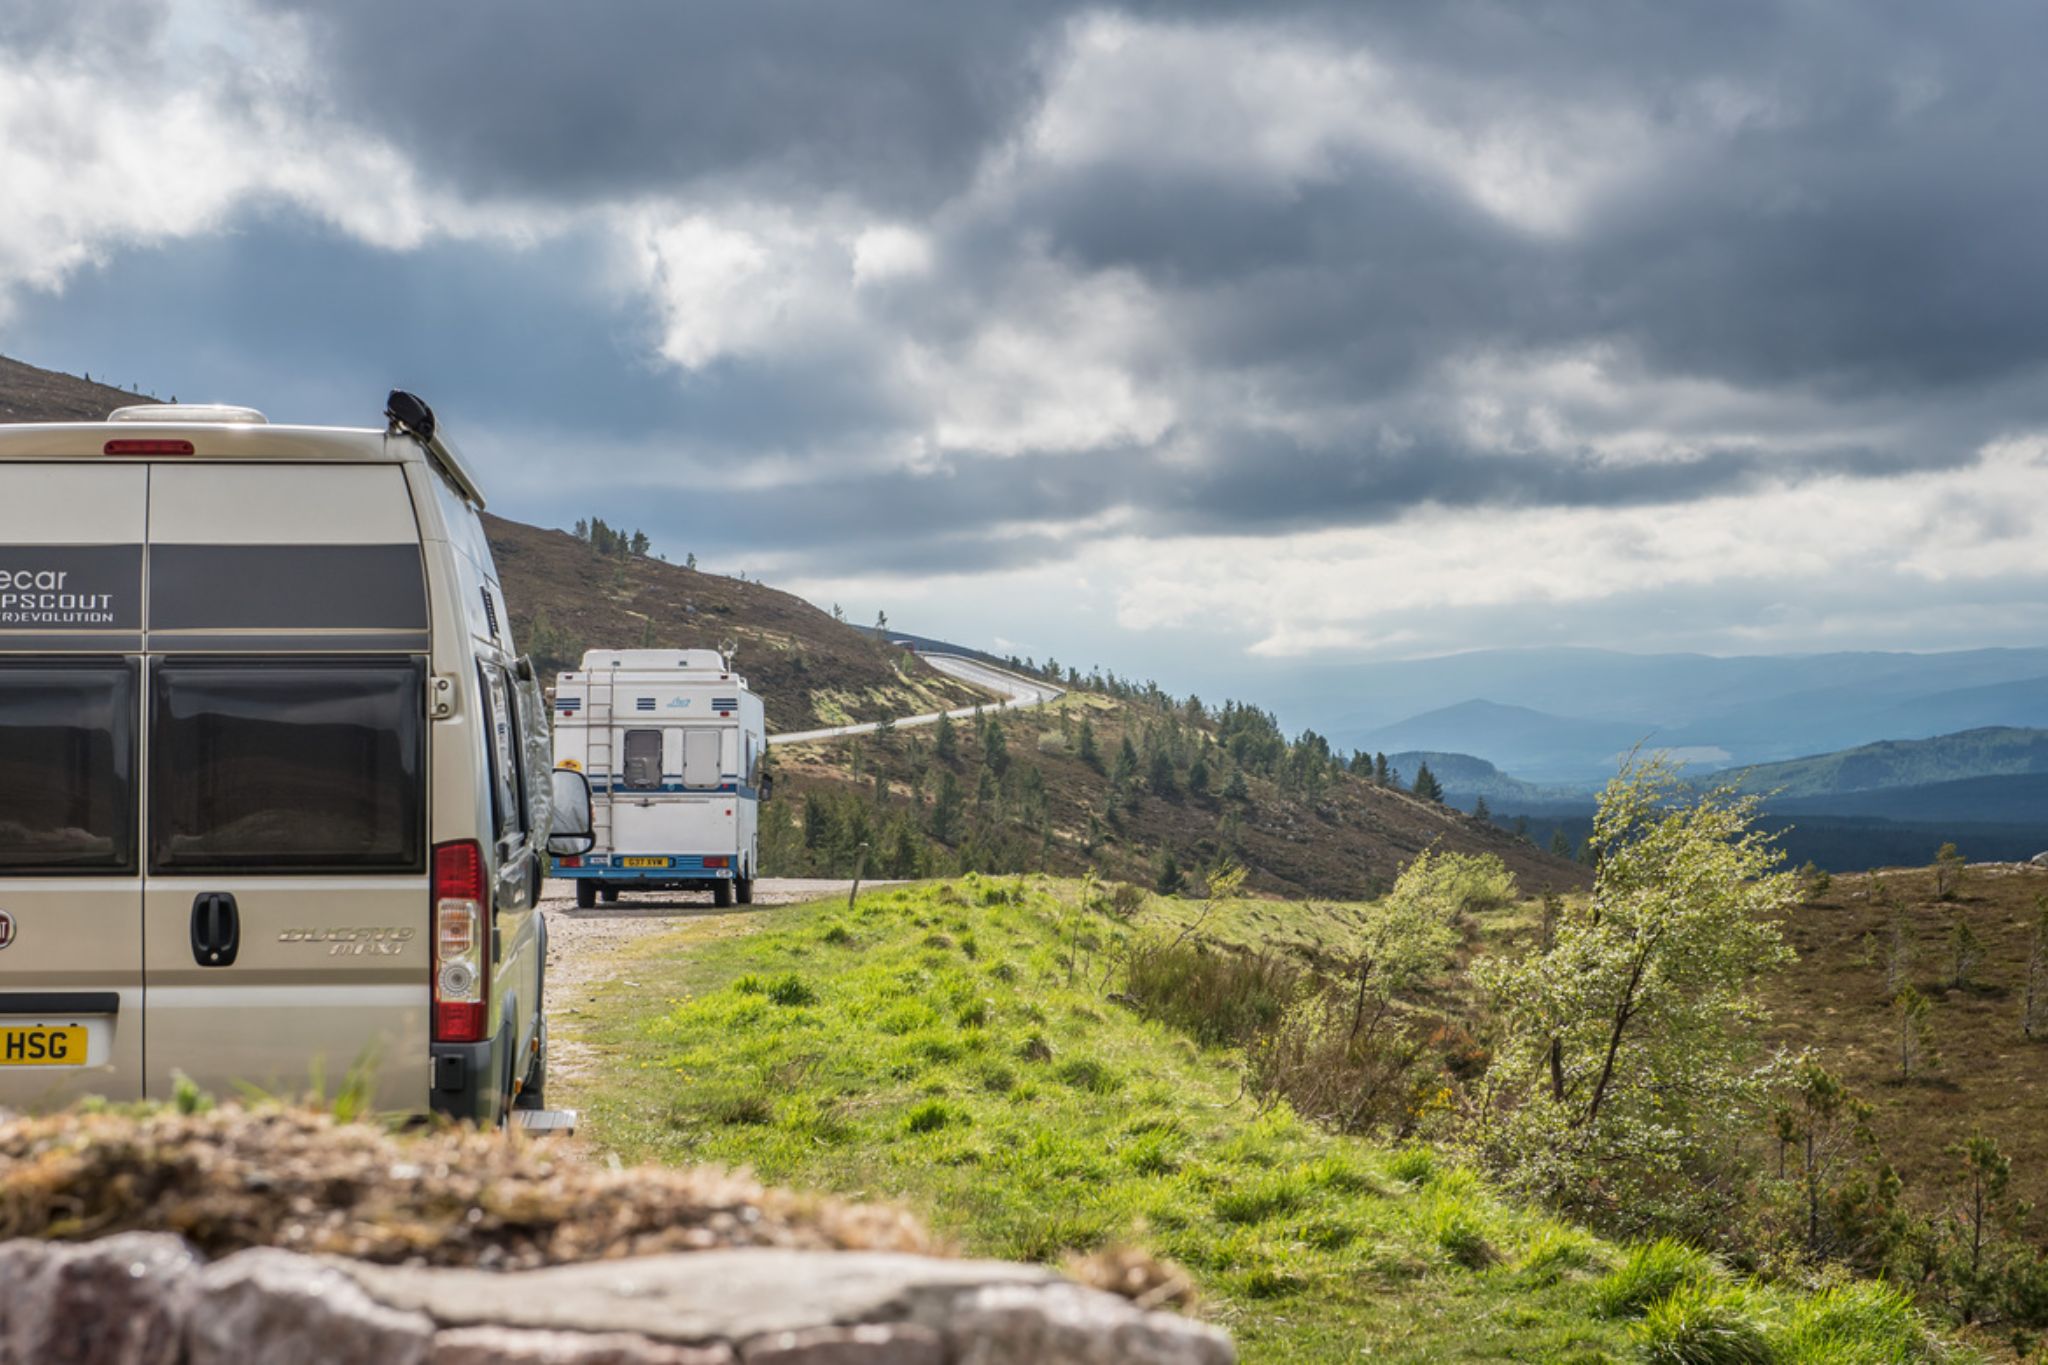 Urlaub mit dem Wohnmobil & Wohnwagen in Schottland